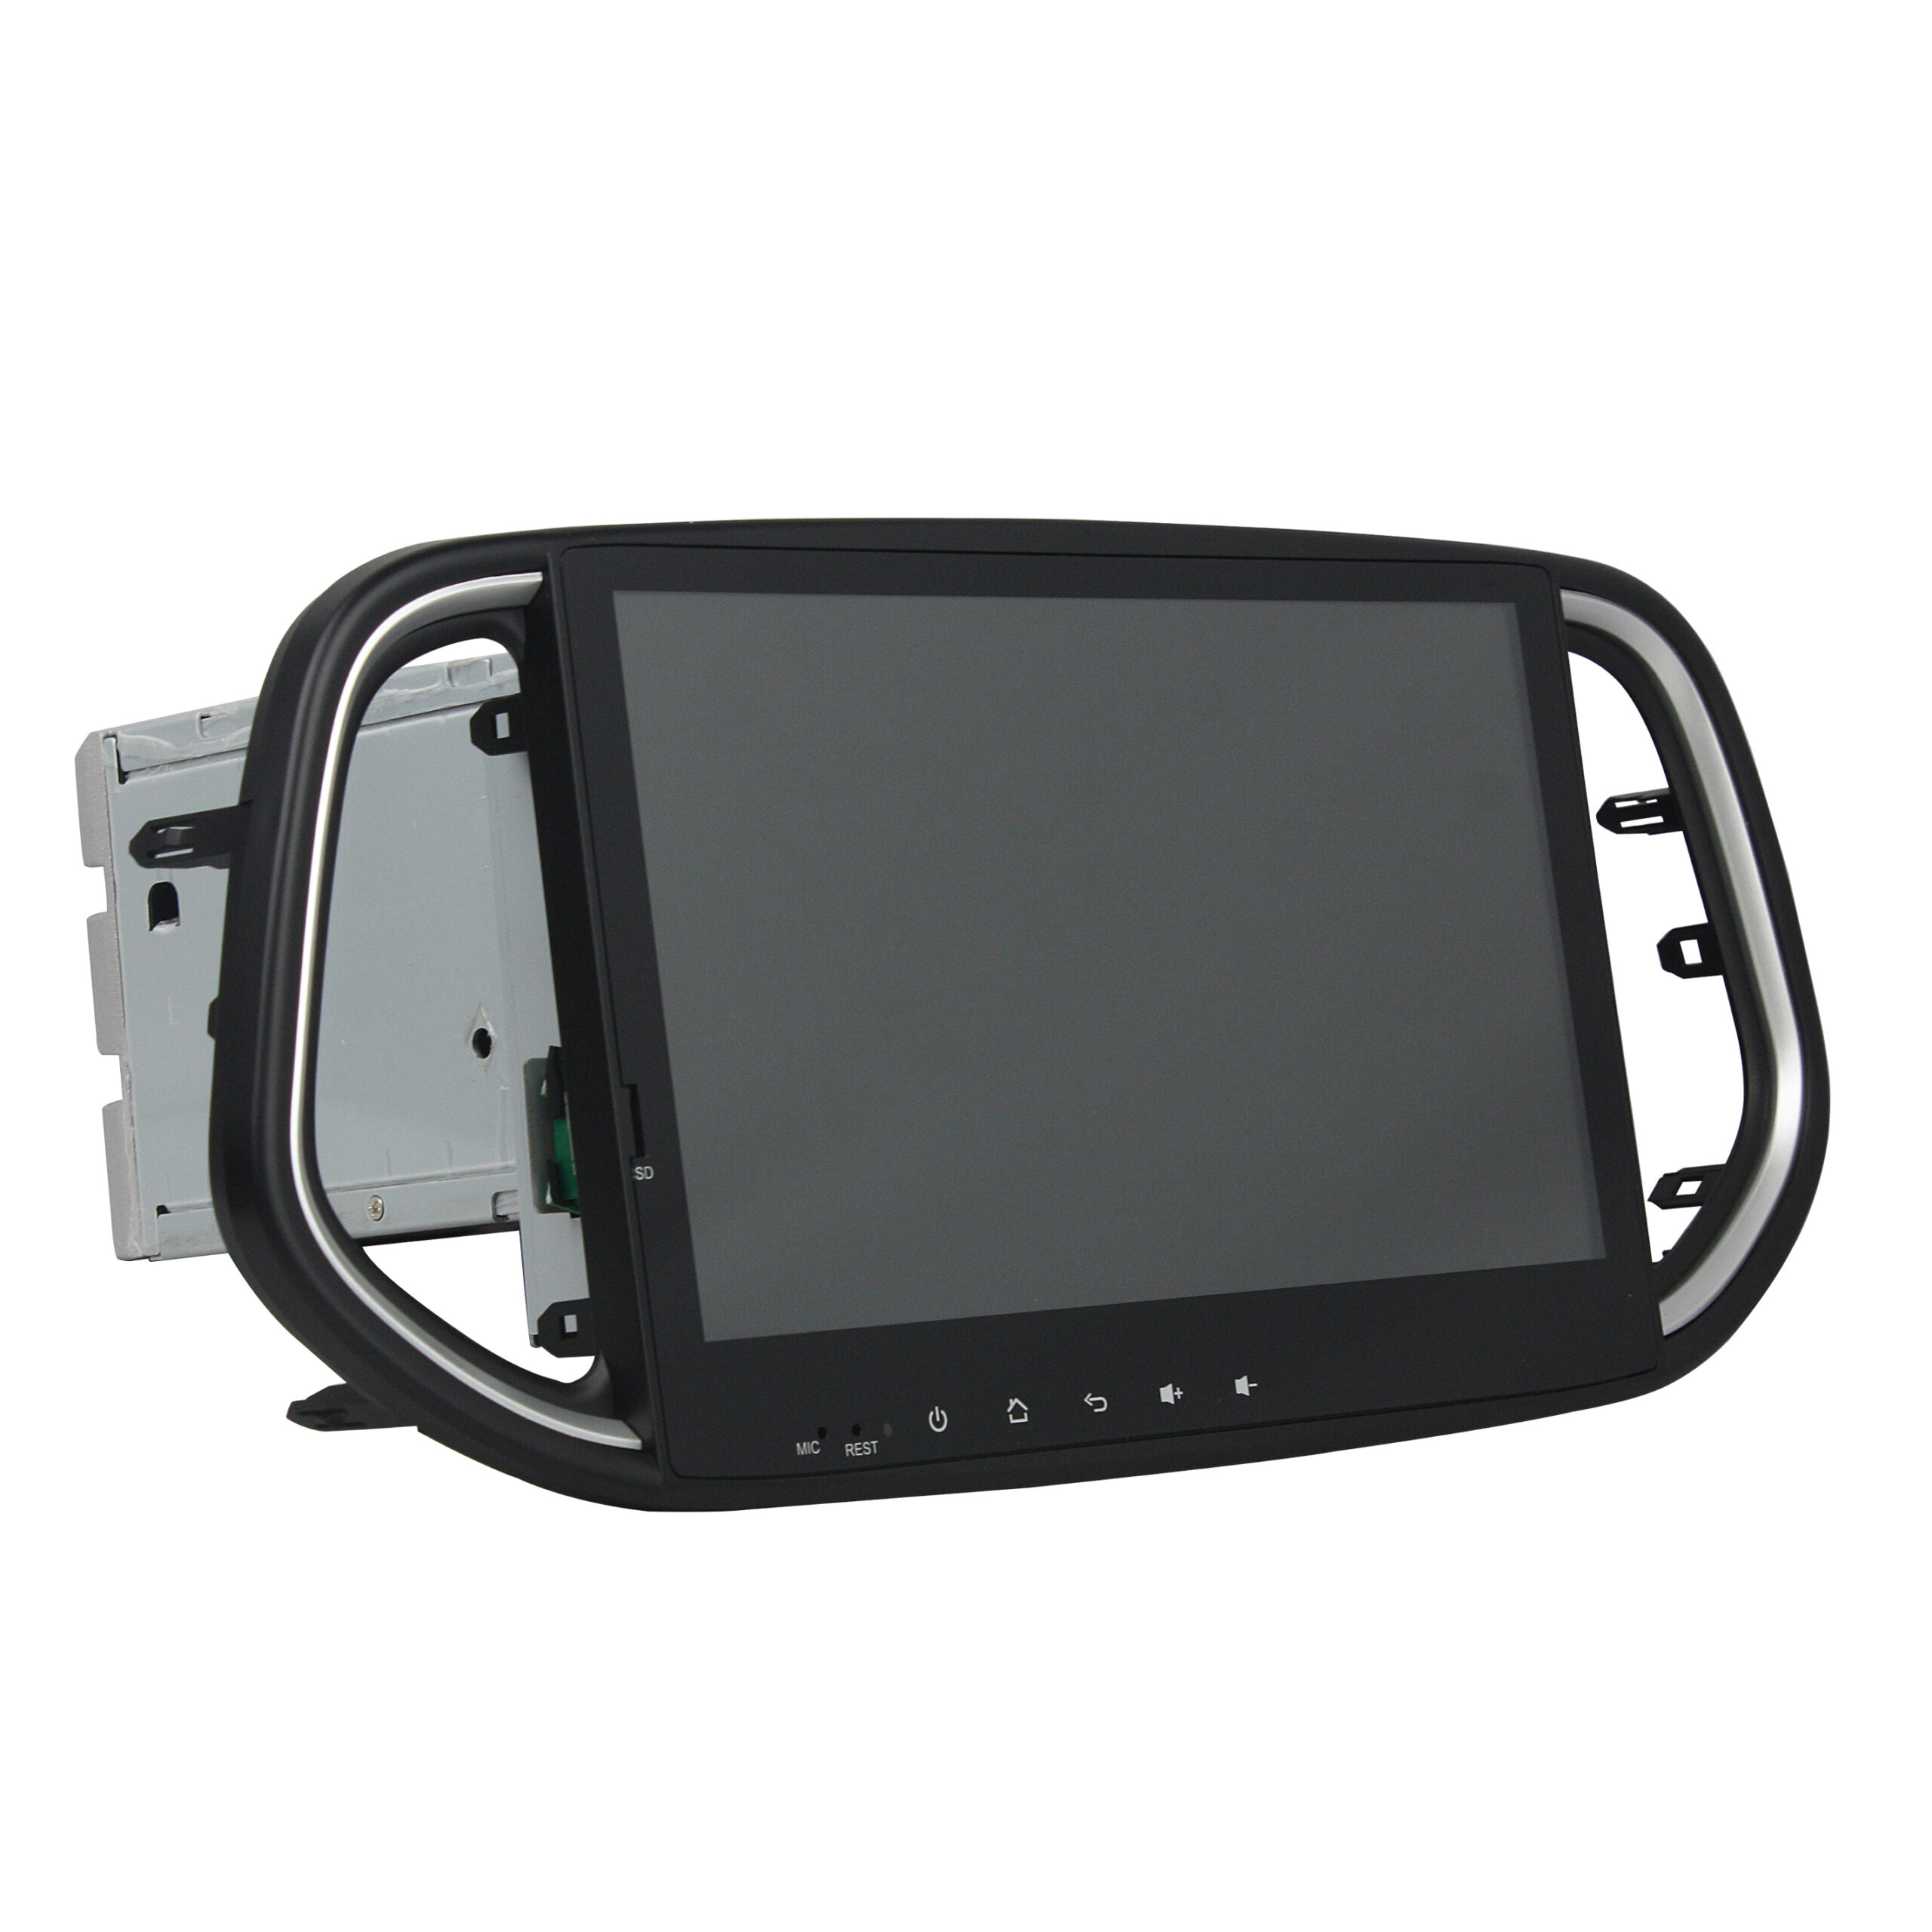 KD-1072 Car Navigation Player car stereo for KIA KX3 2014-2017